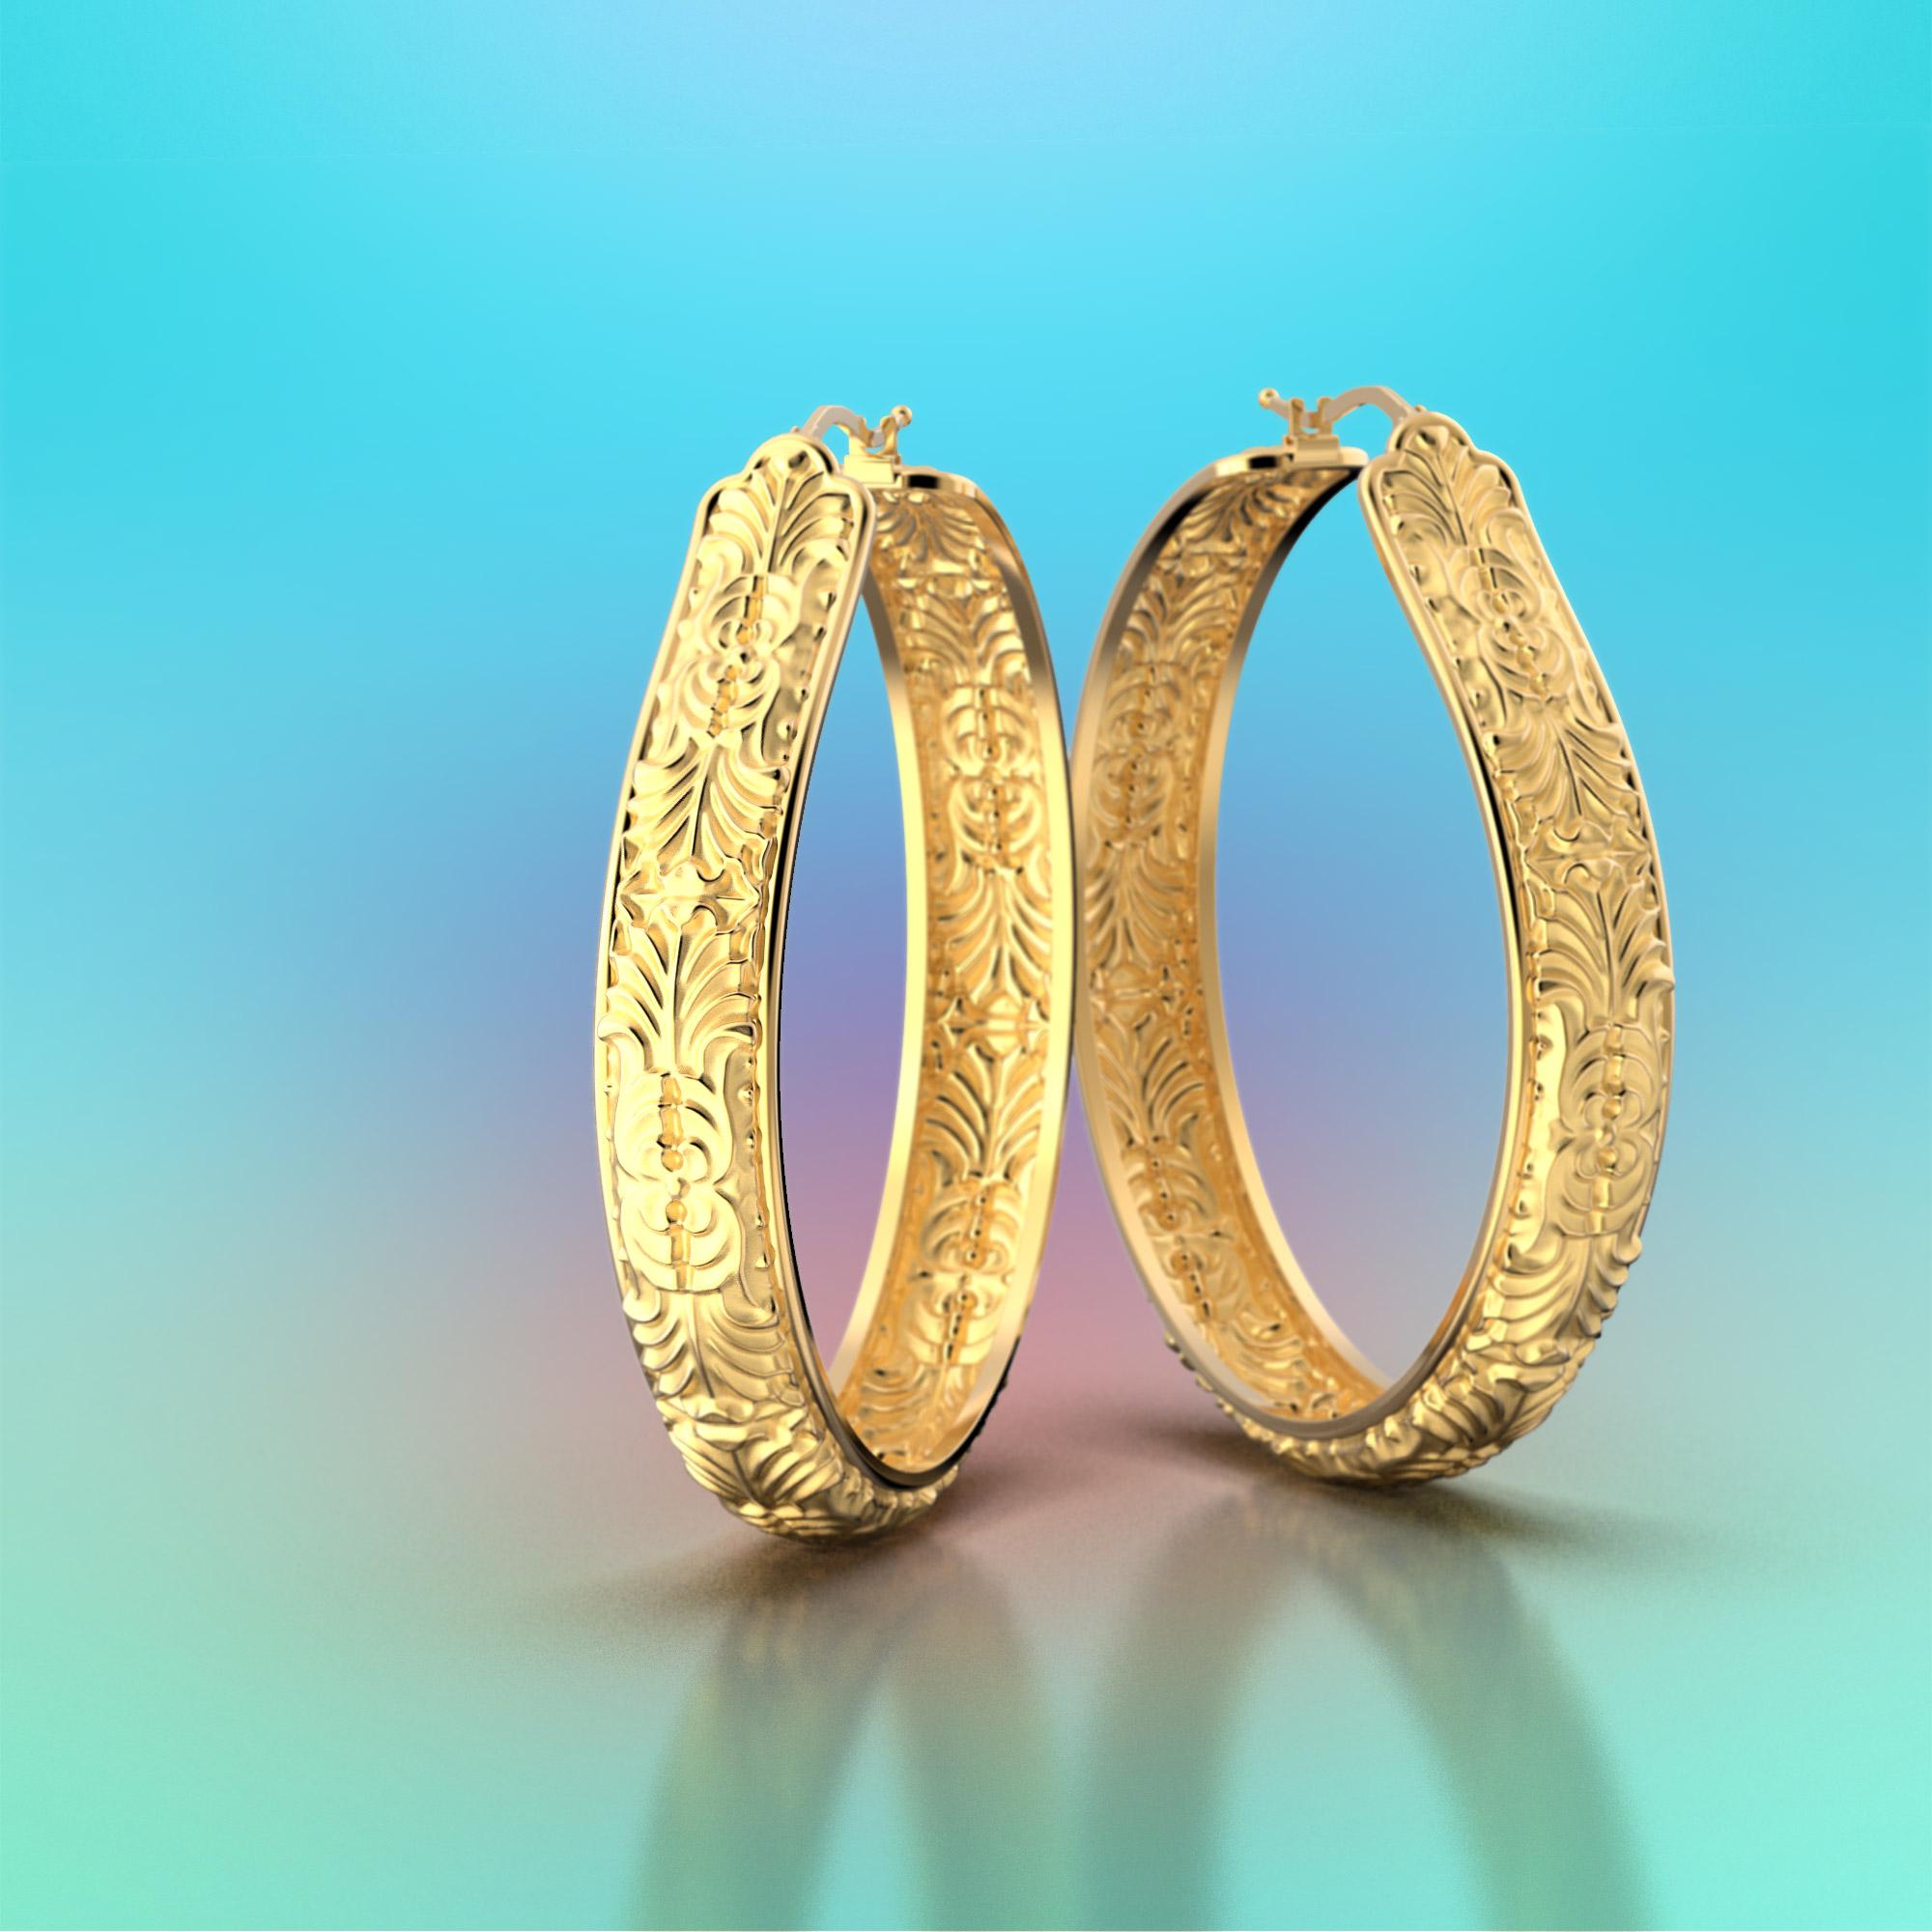 Atemberaubende 14k Gold Hoop Earrings auf Bestellung.
Größe: 51 mm Durchmesser x 9 mm groß
Eine wahre Verkörperung von Opulenz und Eleganz - die Made in Italy Acanthus Leaf Hoop Earrings, die ausschließlich in exquisitem 18- und 14-karätigem